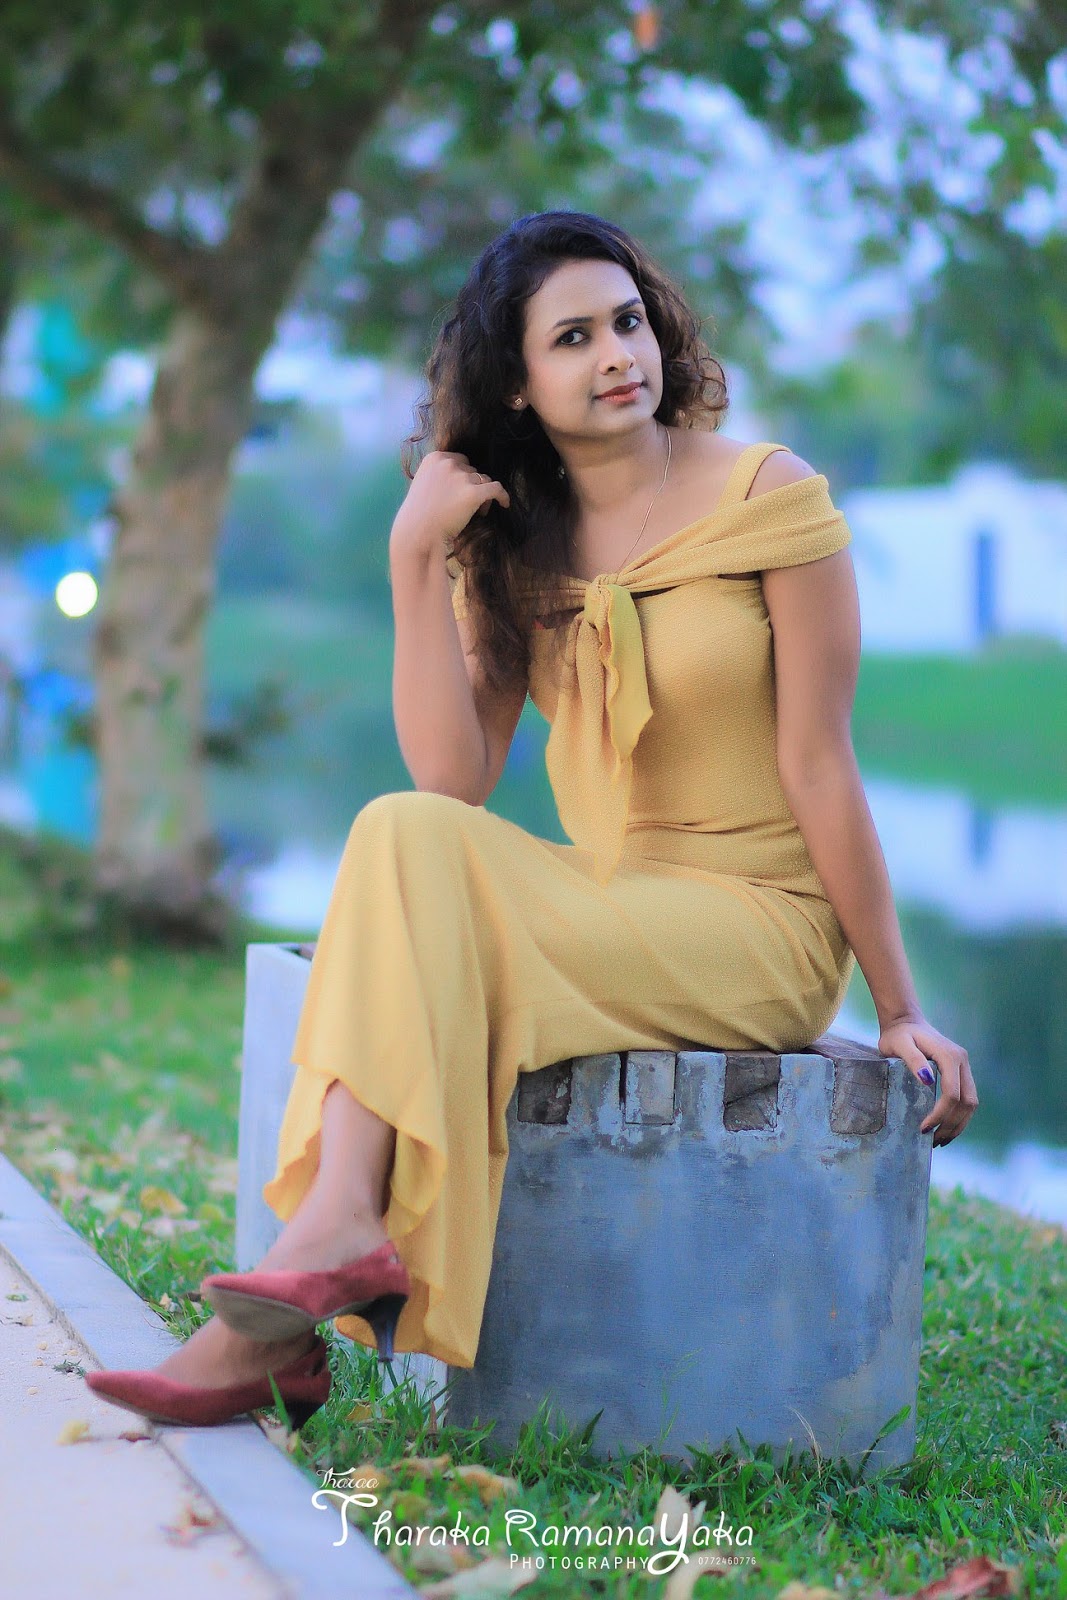 Tharushi Nawanjana Liyanachchi - Srilanka Models Zone 24x7